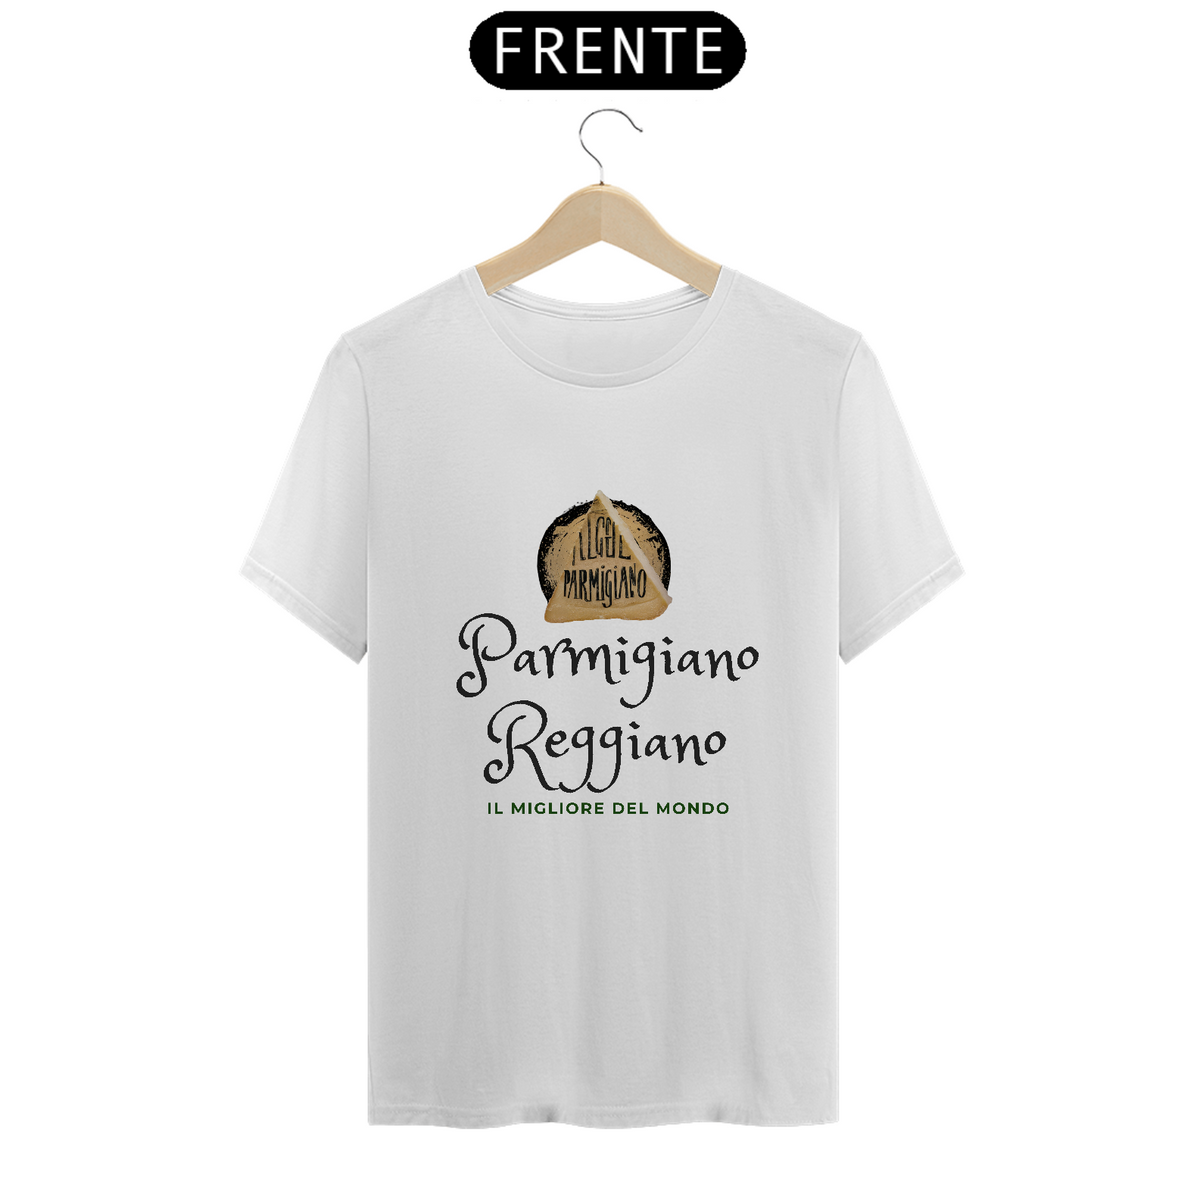 Nome do produto: Camiseta Prime Parmigiano Reggiano